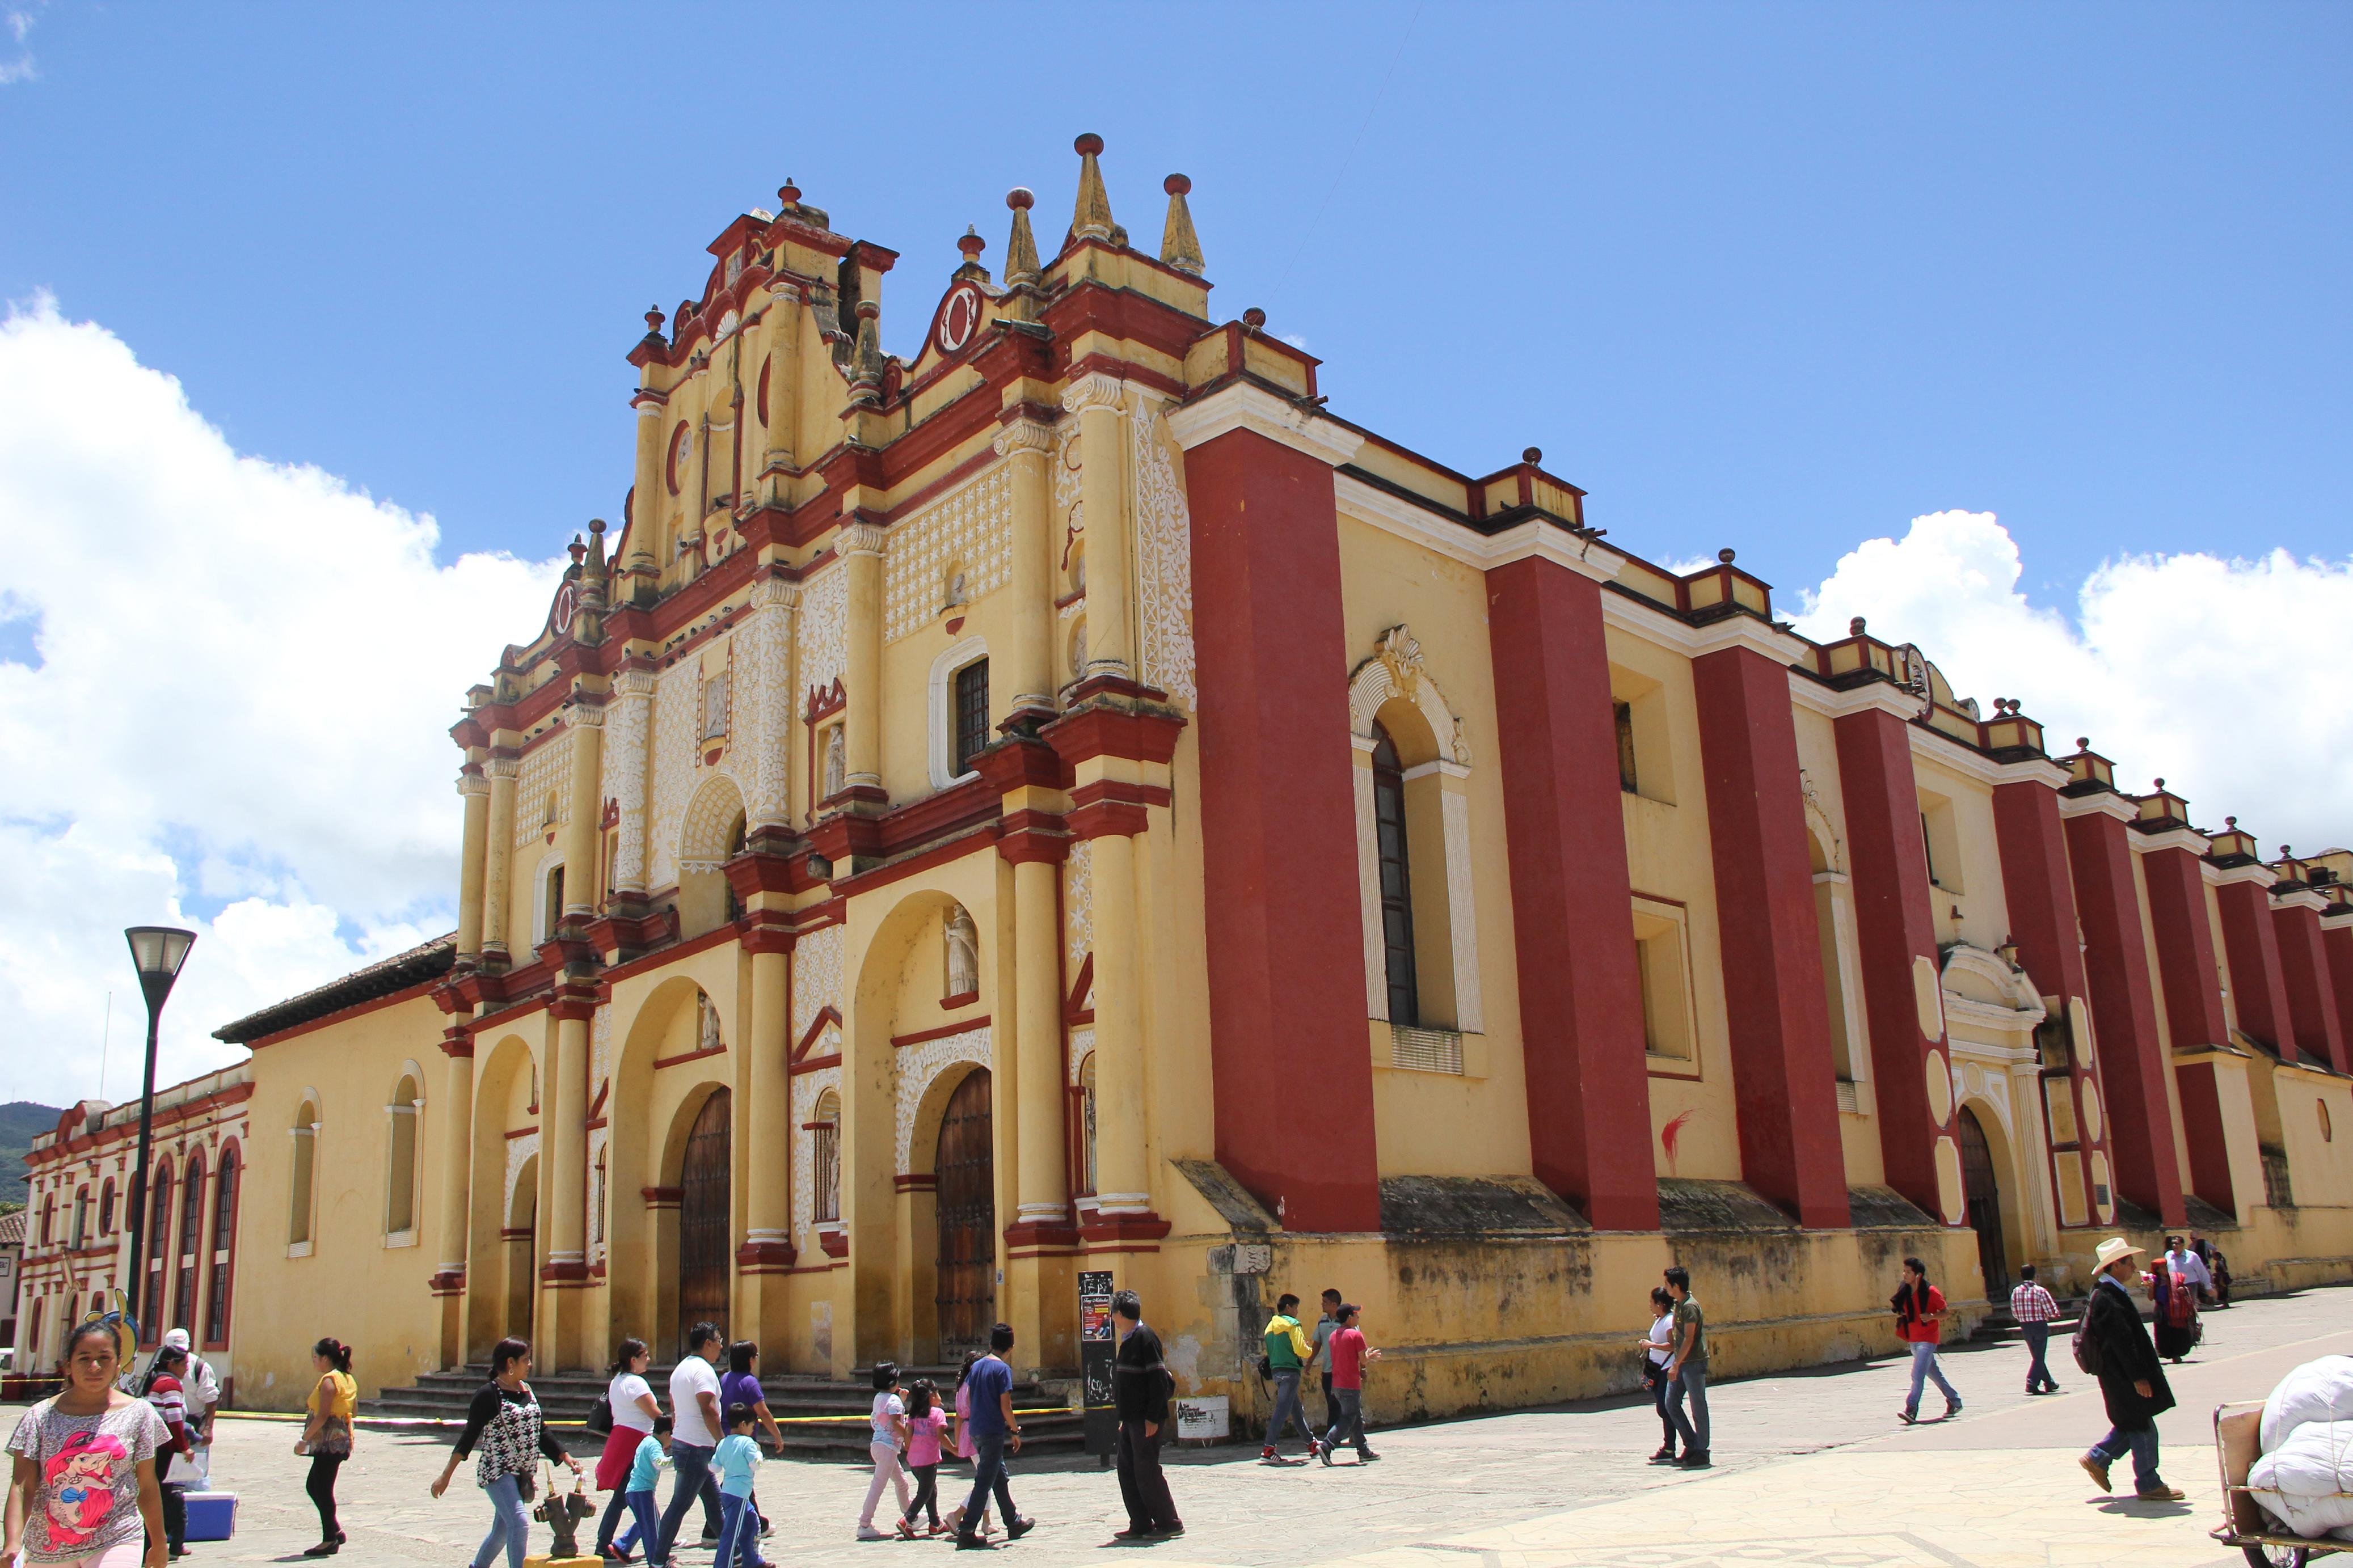 Obispos de 14 países reconocen a la teología india | Chiapasparalelo